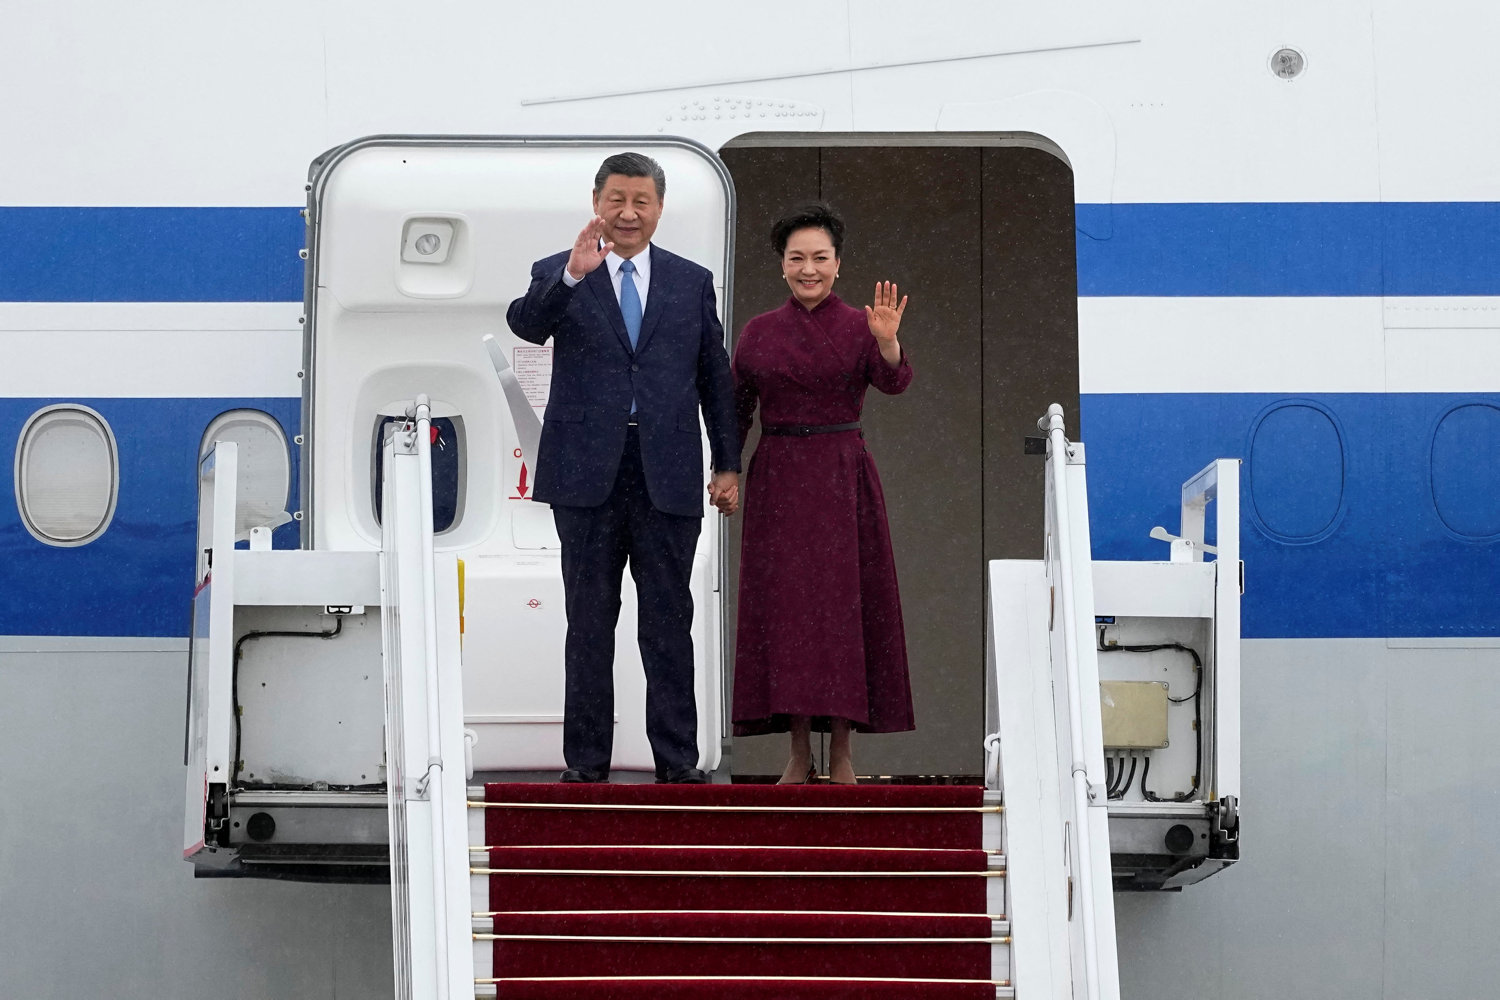 kinas præsident er på vanskeligt statsbesøg i frankrig